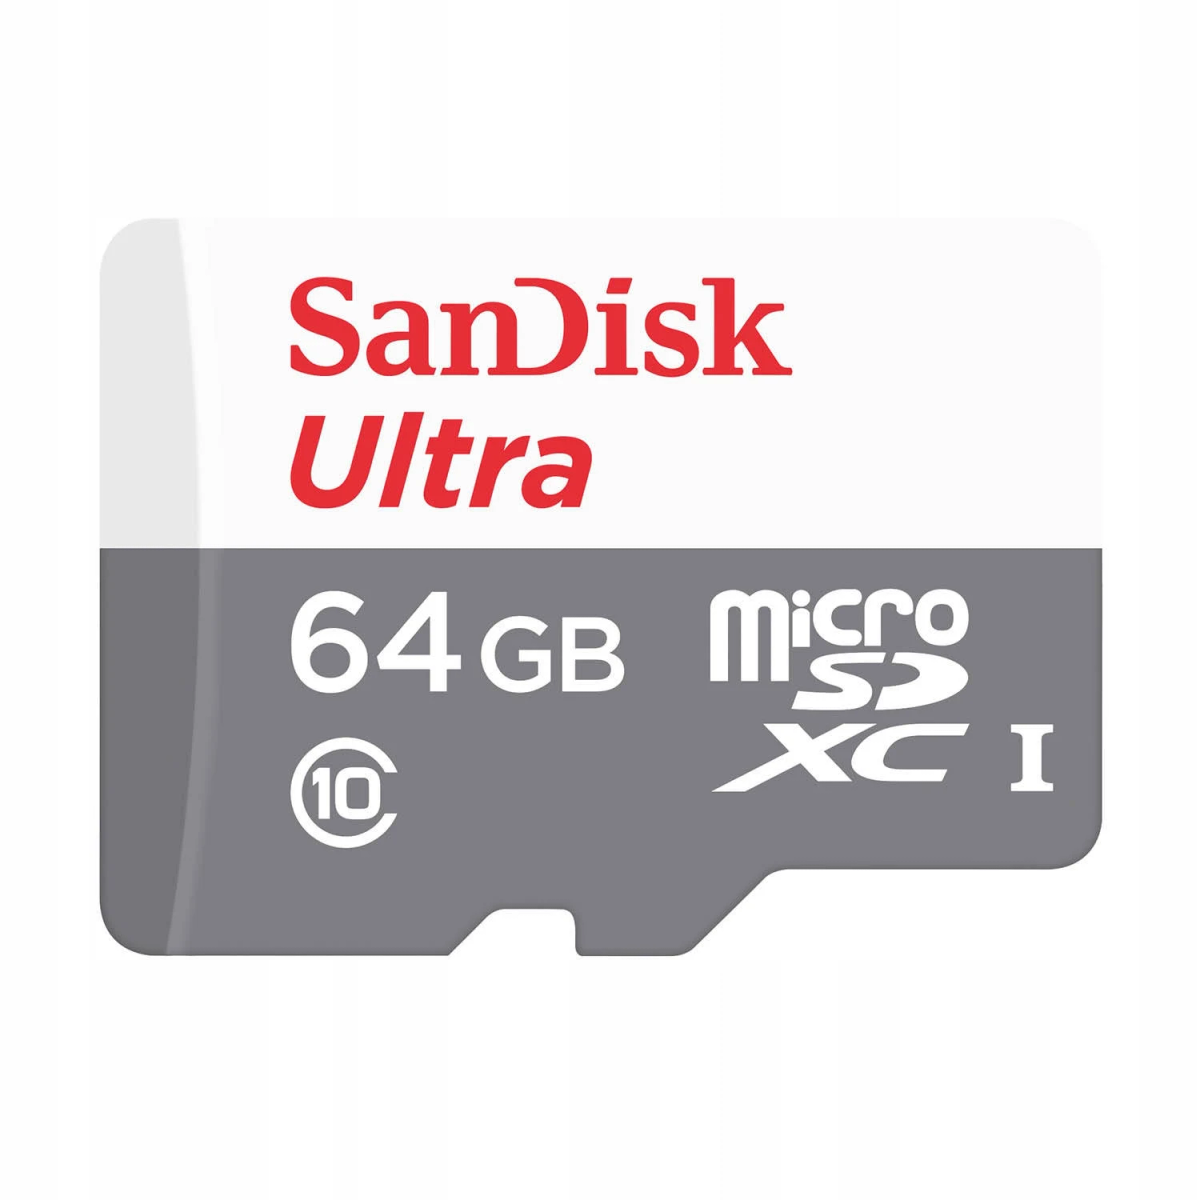 14393642, 64 MB/s GB, SANDISK 100 SD Speicherkarte,